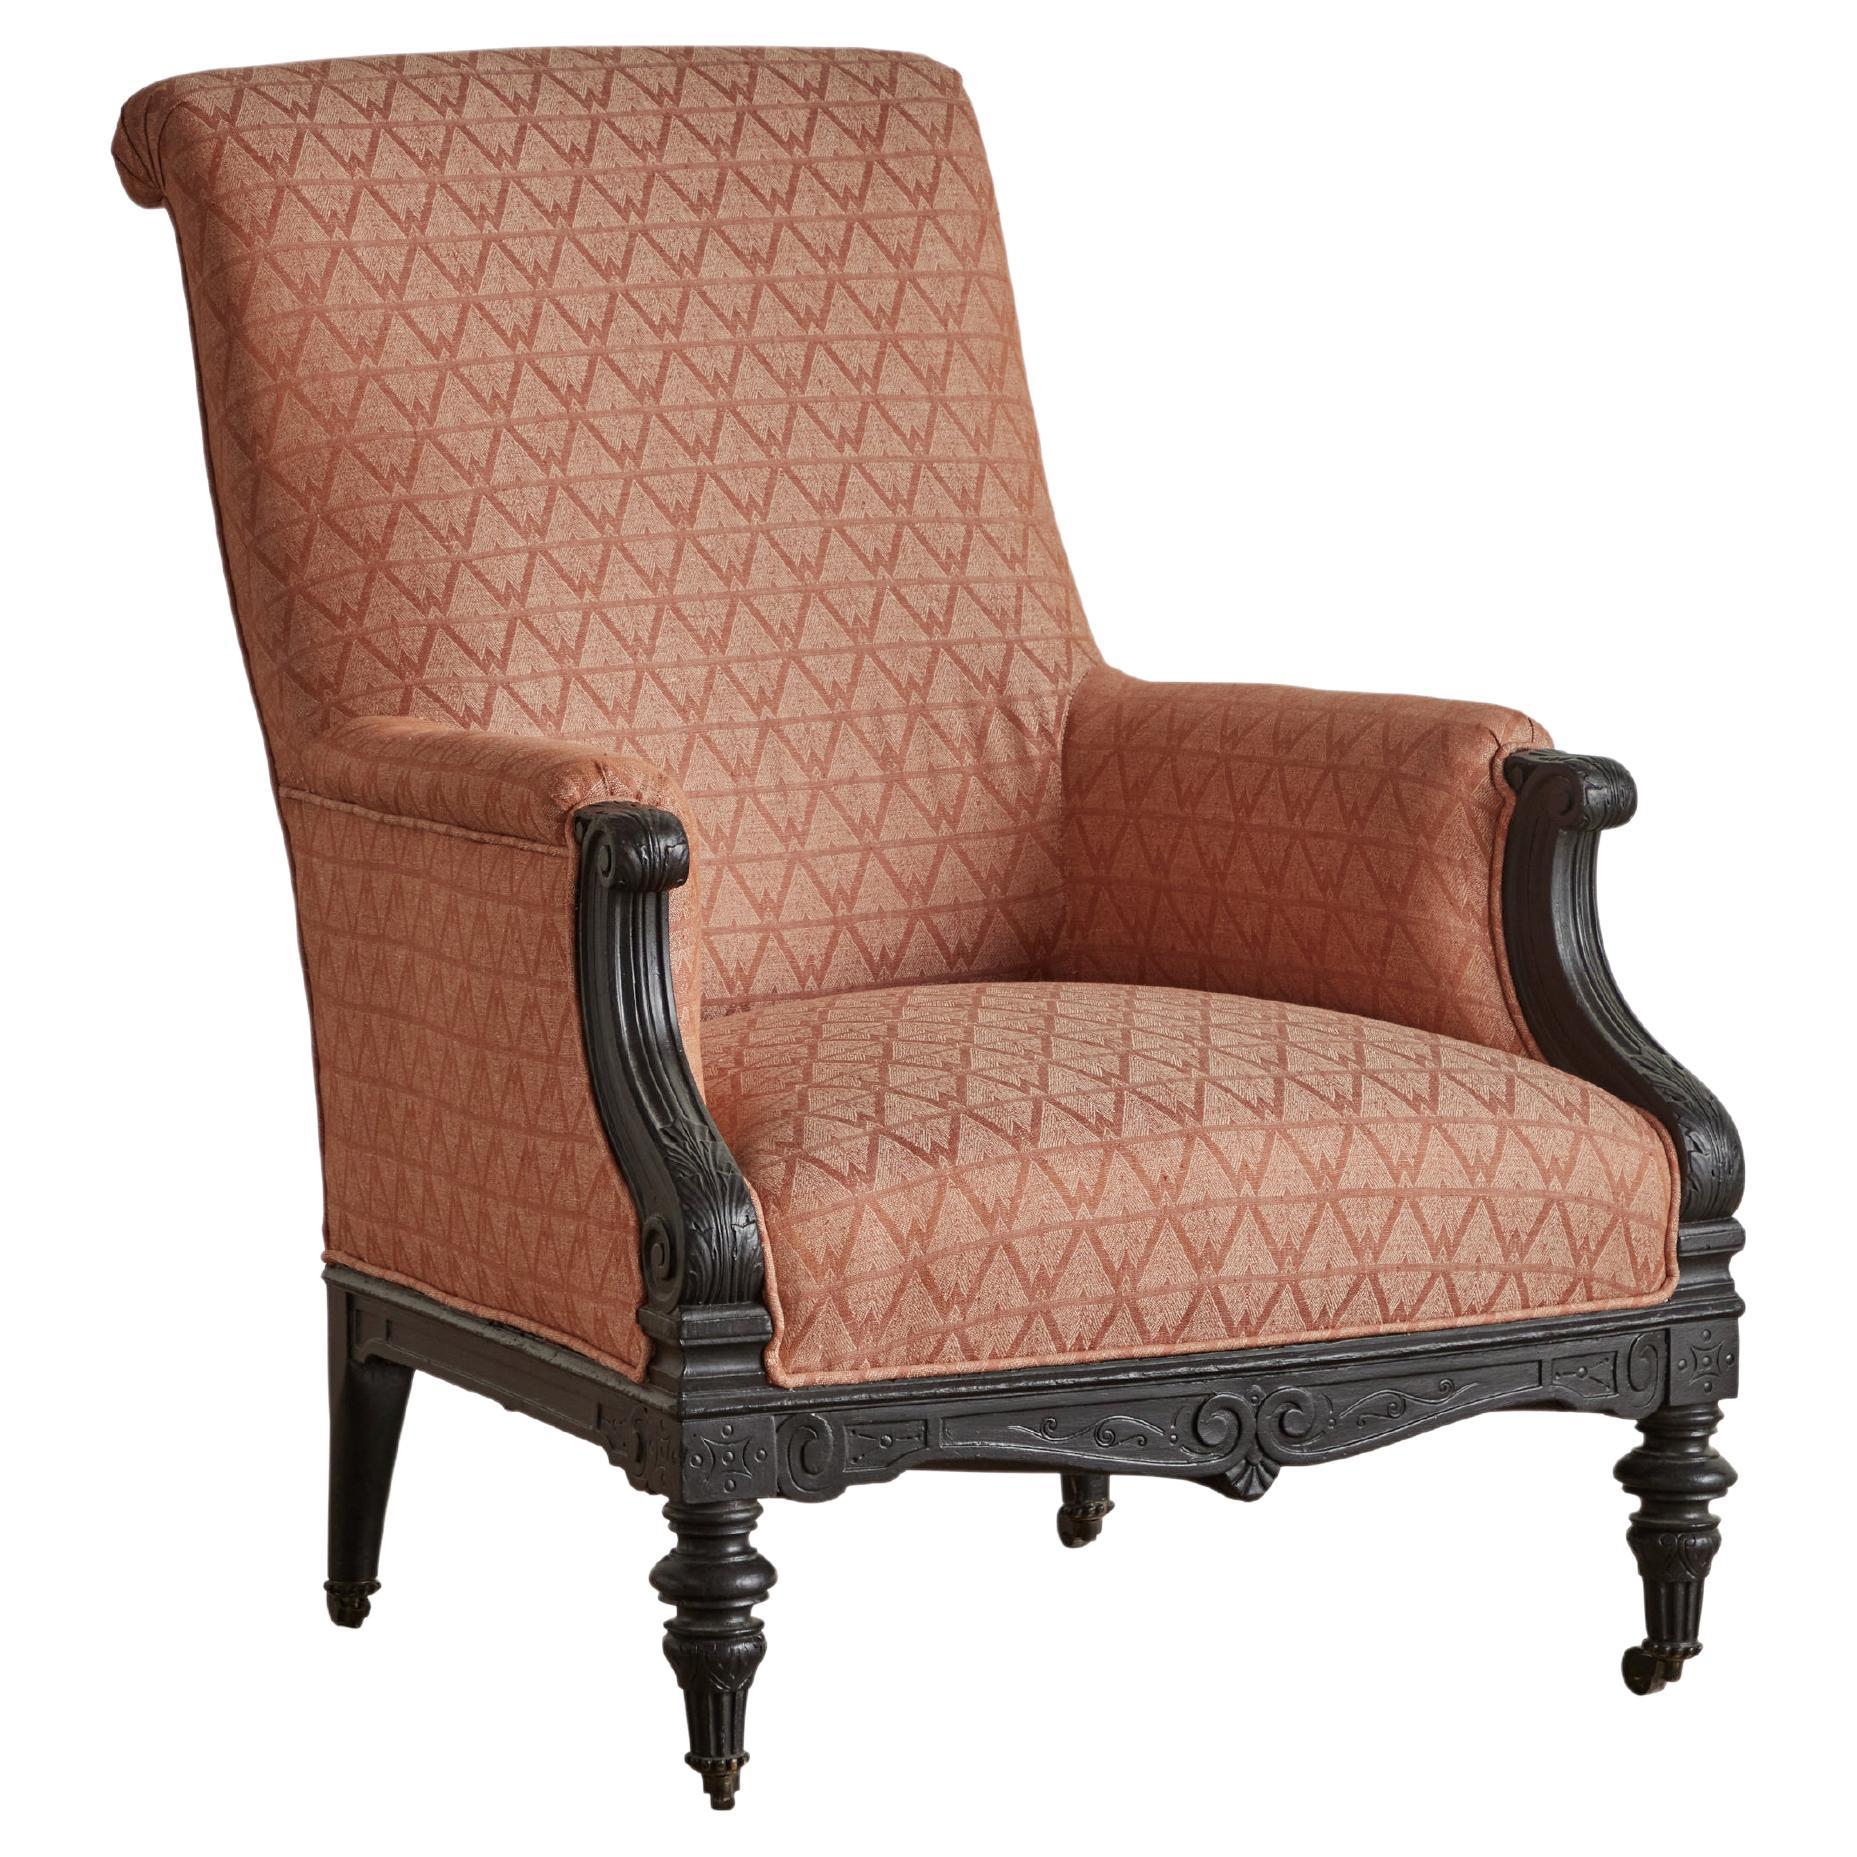 Ein Paar Sessel aus Frankreich aus dem 19. Jahrhundert, neu gepolstert mit Harwood House Stoff. Diese Stühle haben kunstvoll geschnitzte, bemalte Holzrahmen. Einige sichtbare Abnutzungserscheinungen am Originalholz, die mit dem Alter und dem